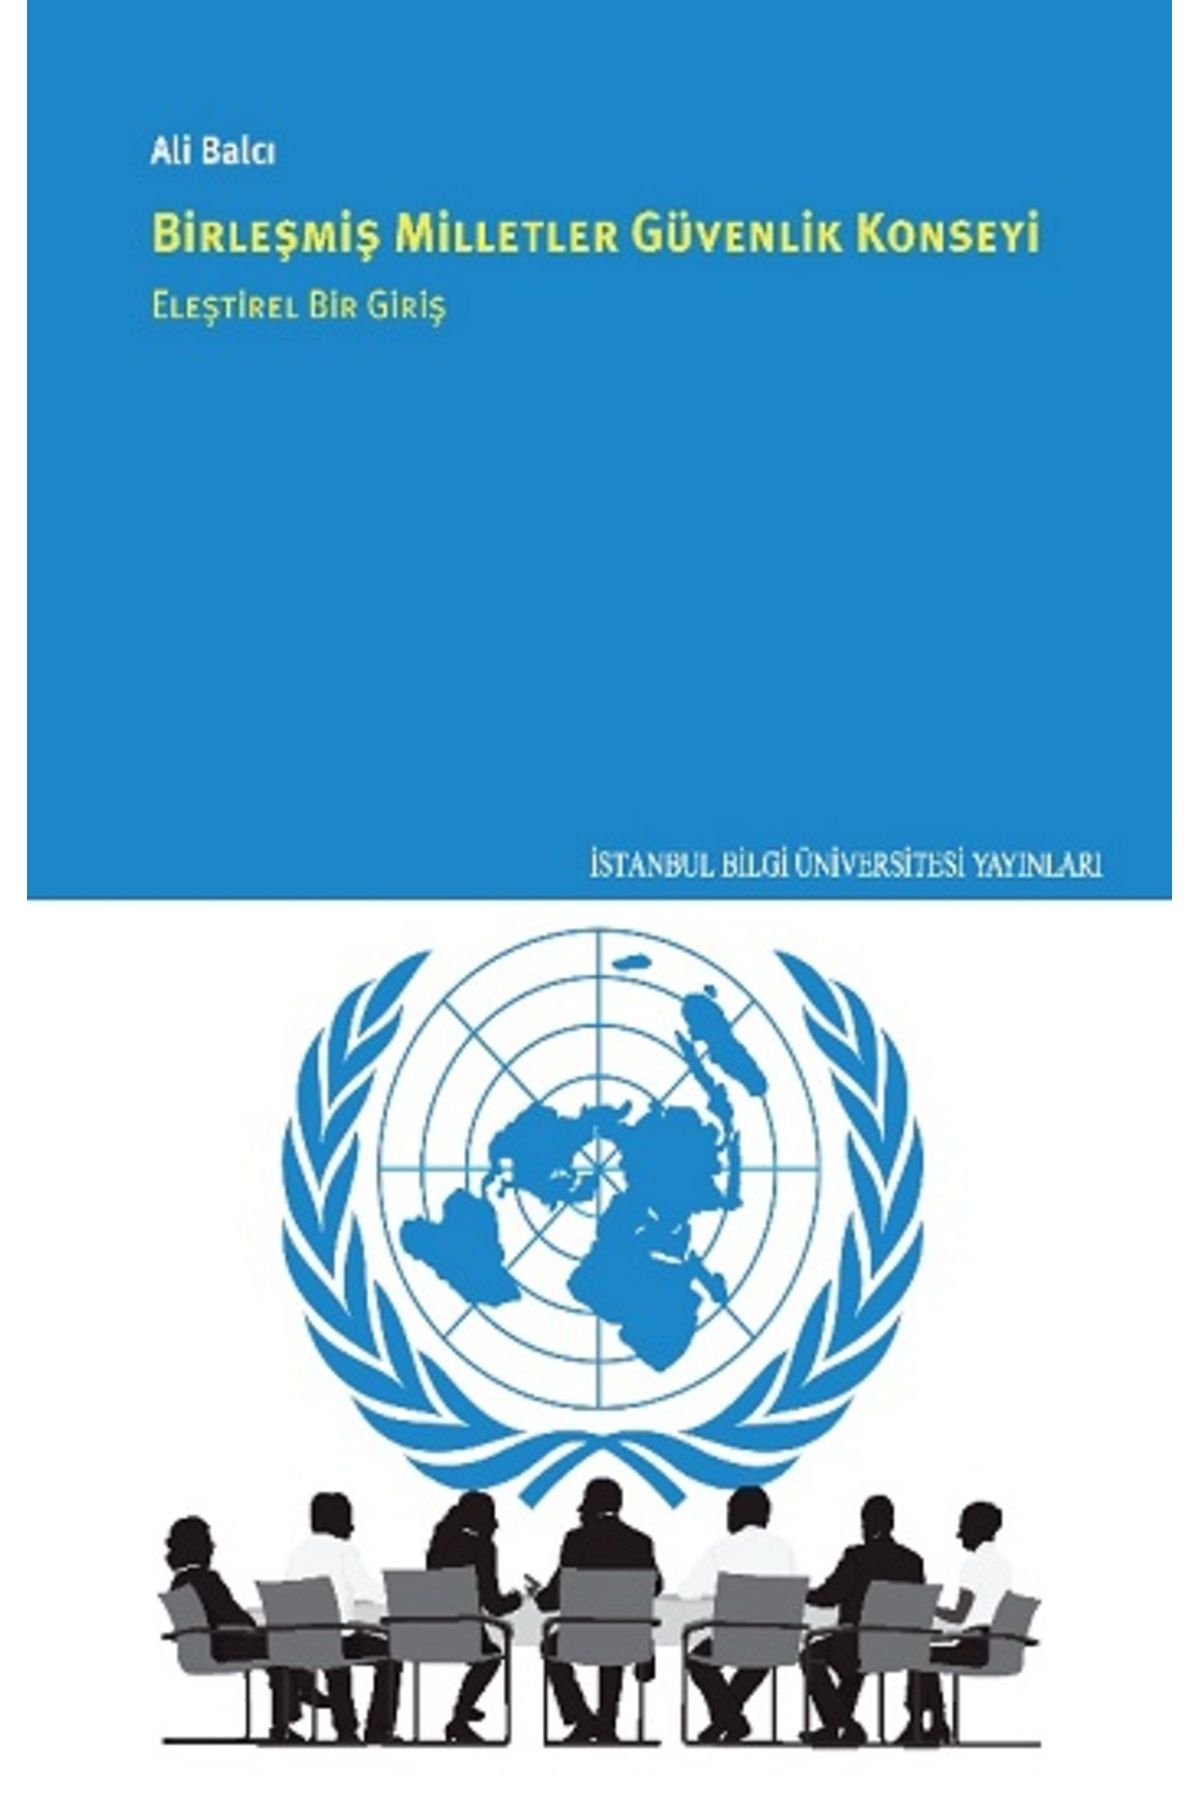 İstanbul Bilgi Üniversitesi Yayınları Birleşmiş Milletler Güvenlik Konseyi Eleştirel Bir Giriş